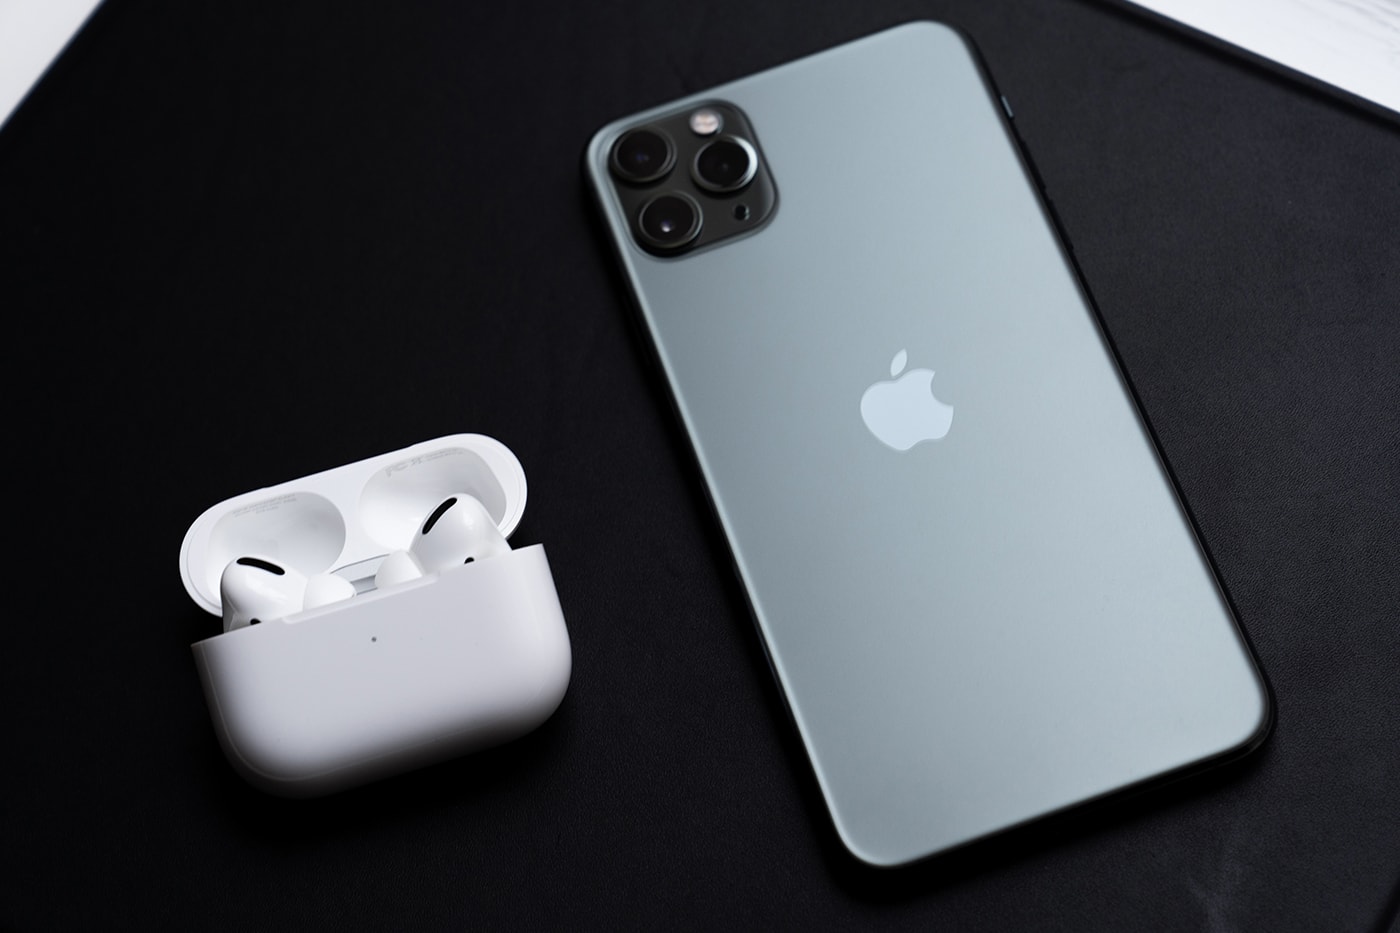 애플 에어팟 프로 실물 이미지 공개, 노이크 캔슬링, 커널형 이어폰, 아이폰 11